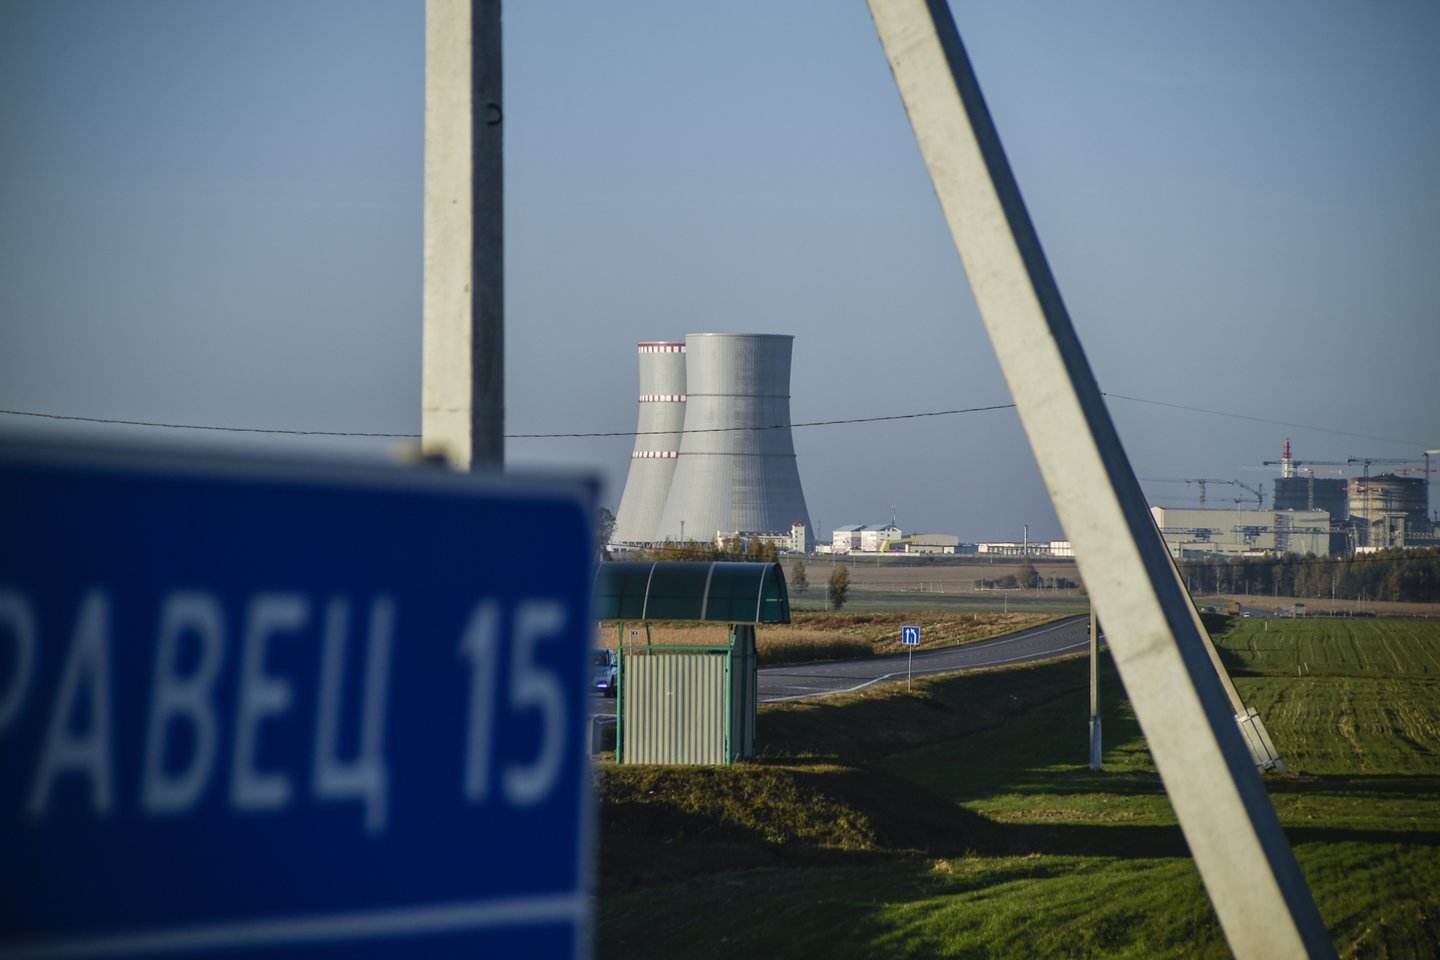 Astravo atominės elektrinės pirmasis energijos blokas vėl įjungtas į šalies energetikos sistemą, po eilinio jo atjungimo kovo 25-ąją.<br>V.Ščiavinsko nuotr.